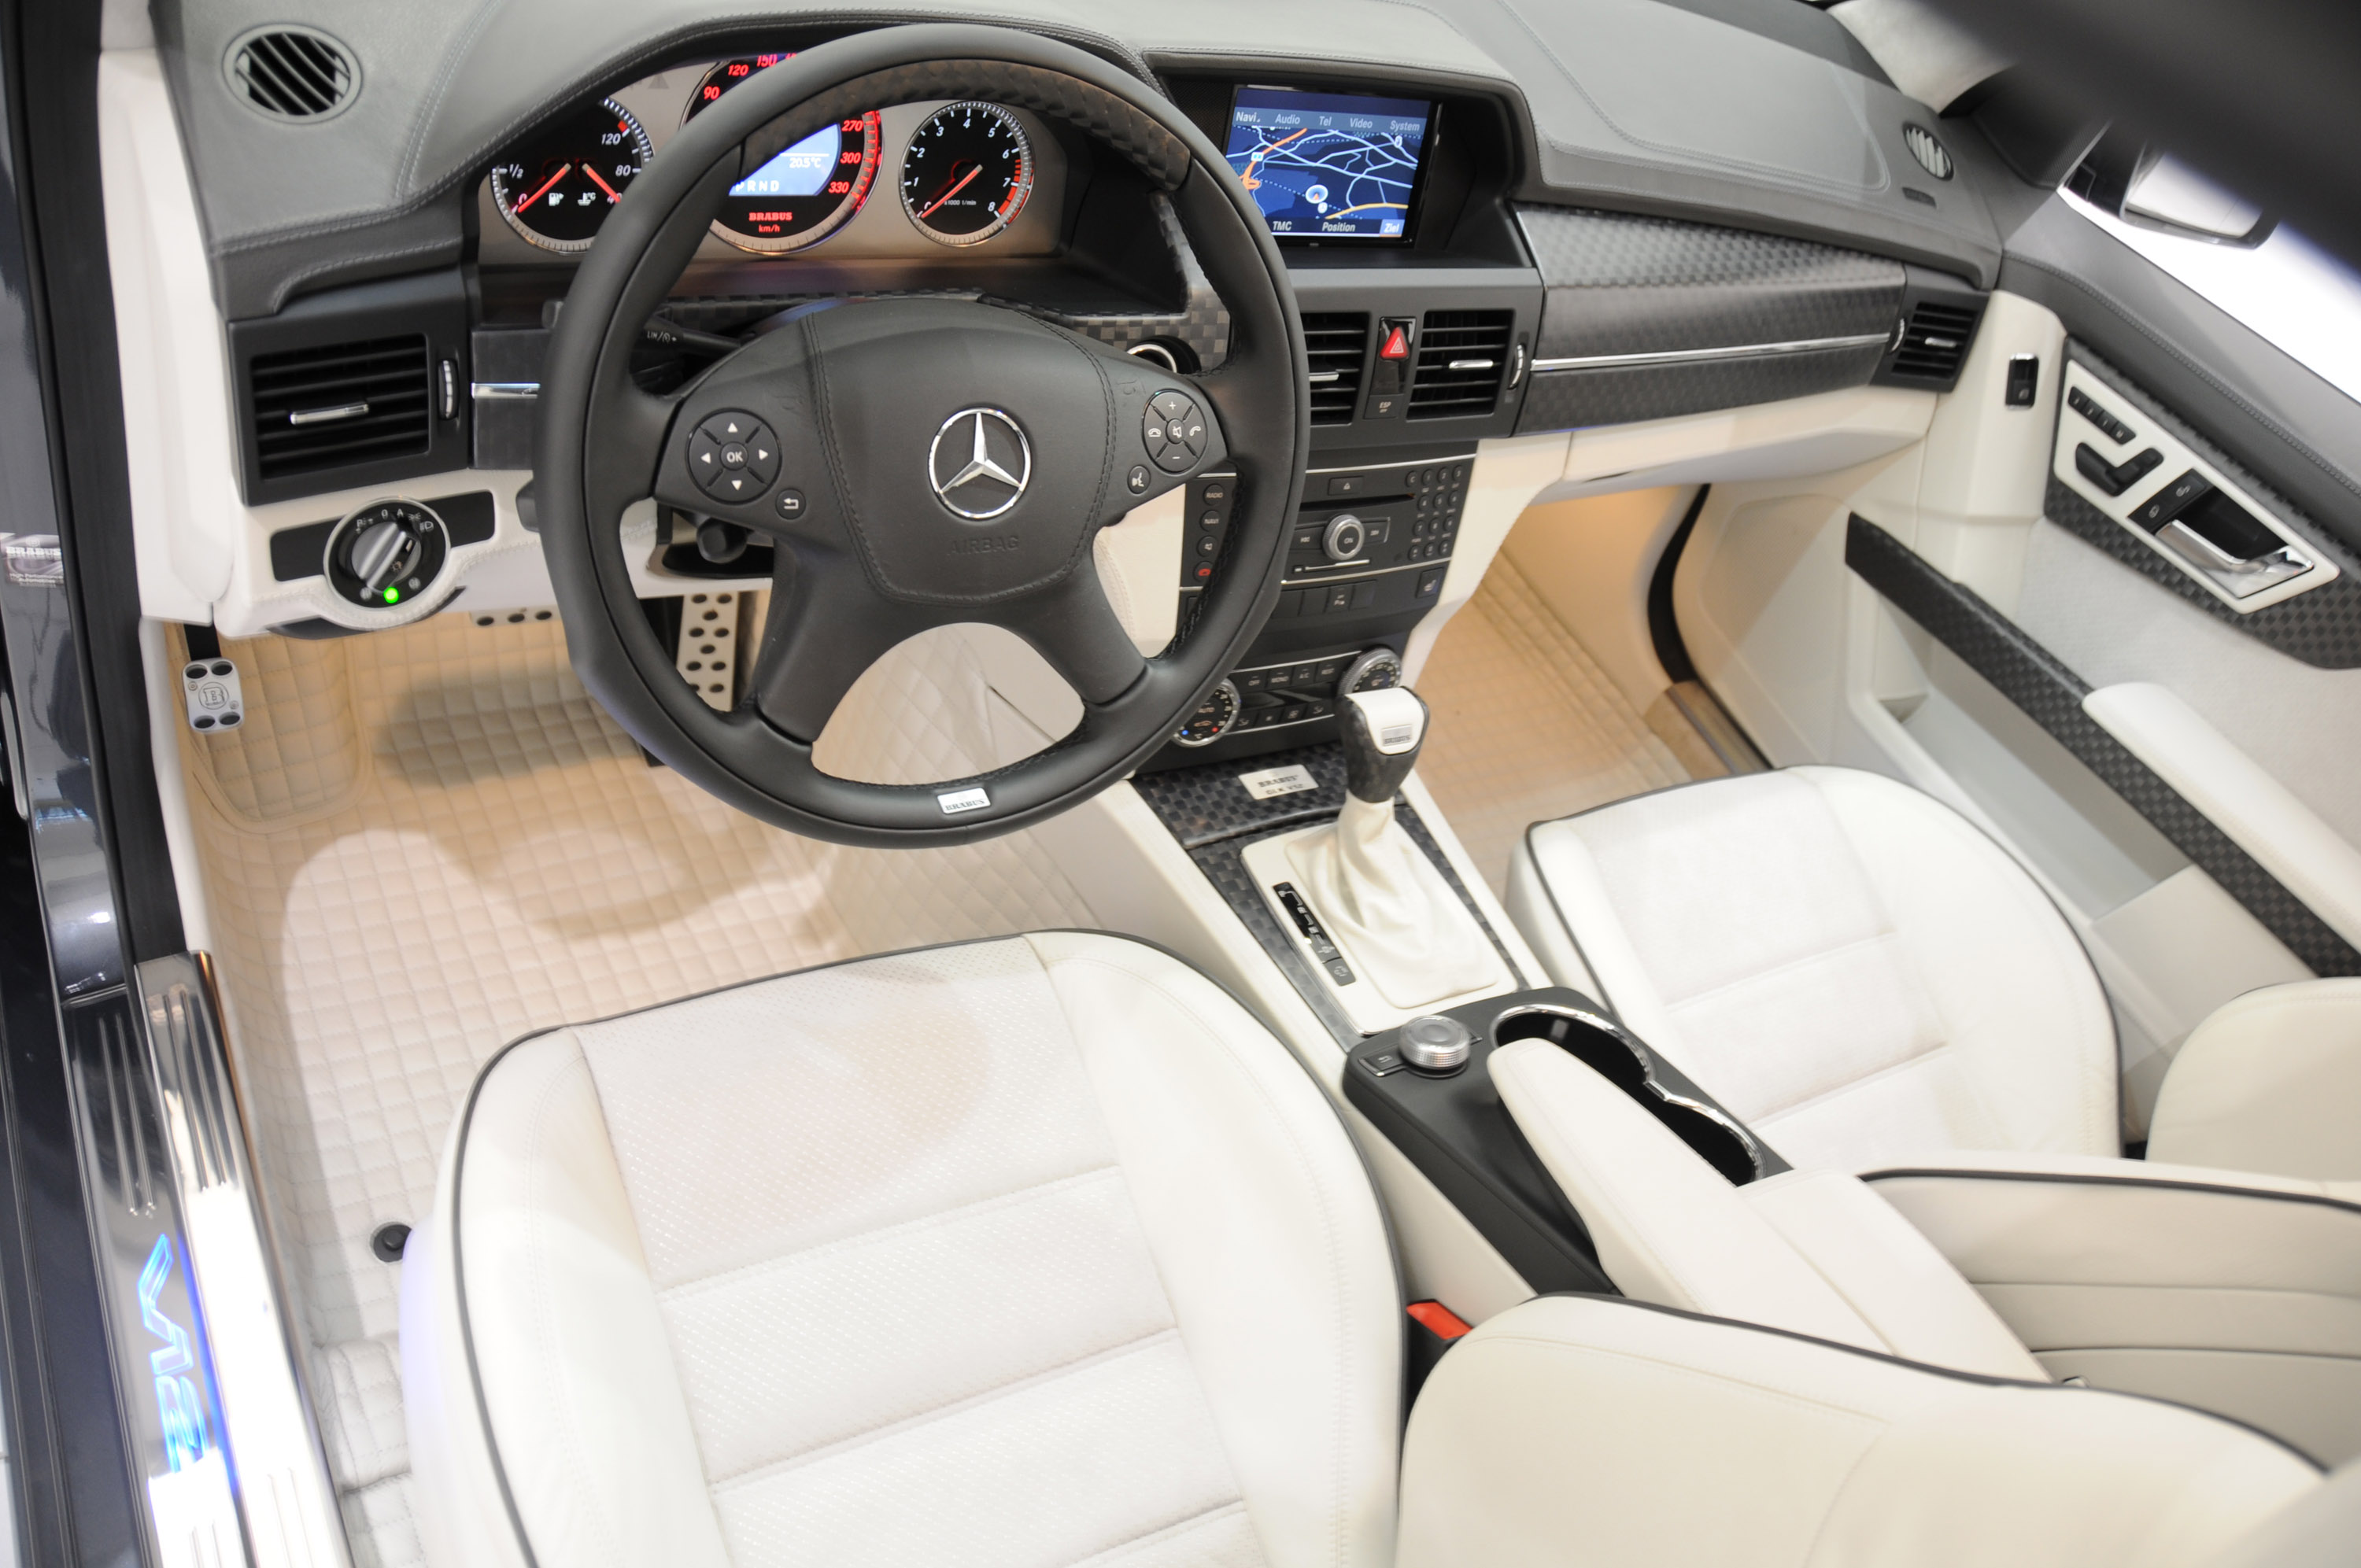 Brabus Mercedes-Benz GLK V12